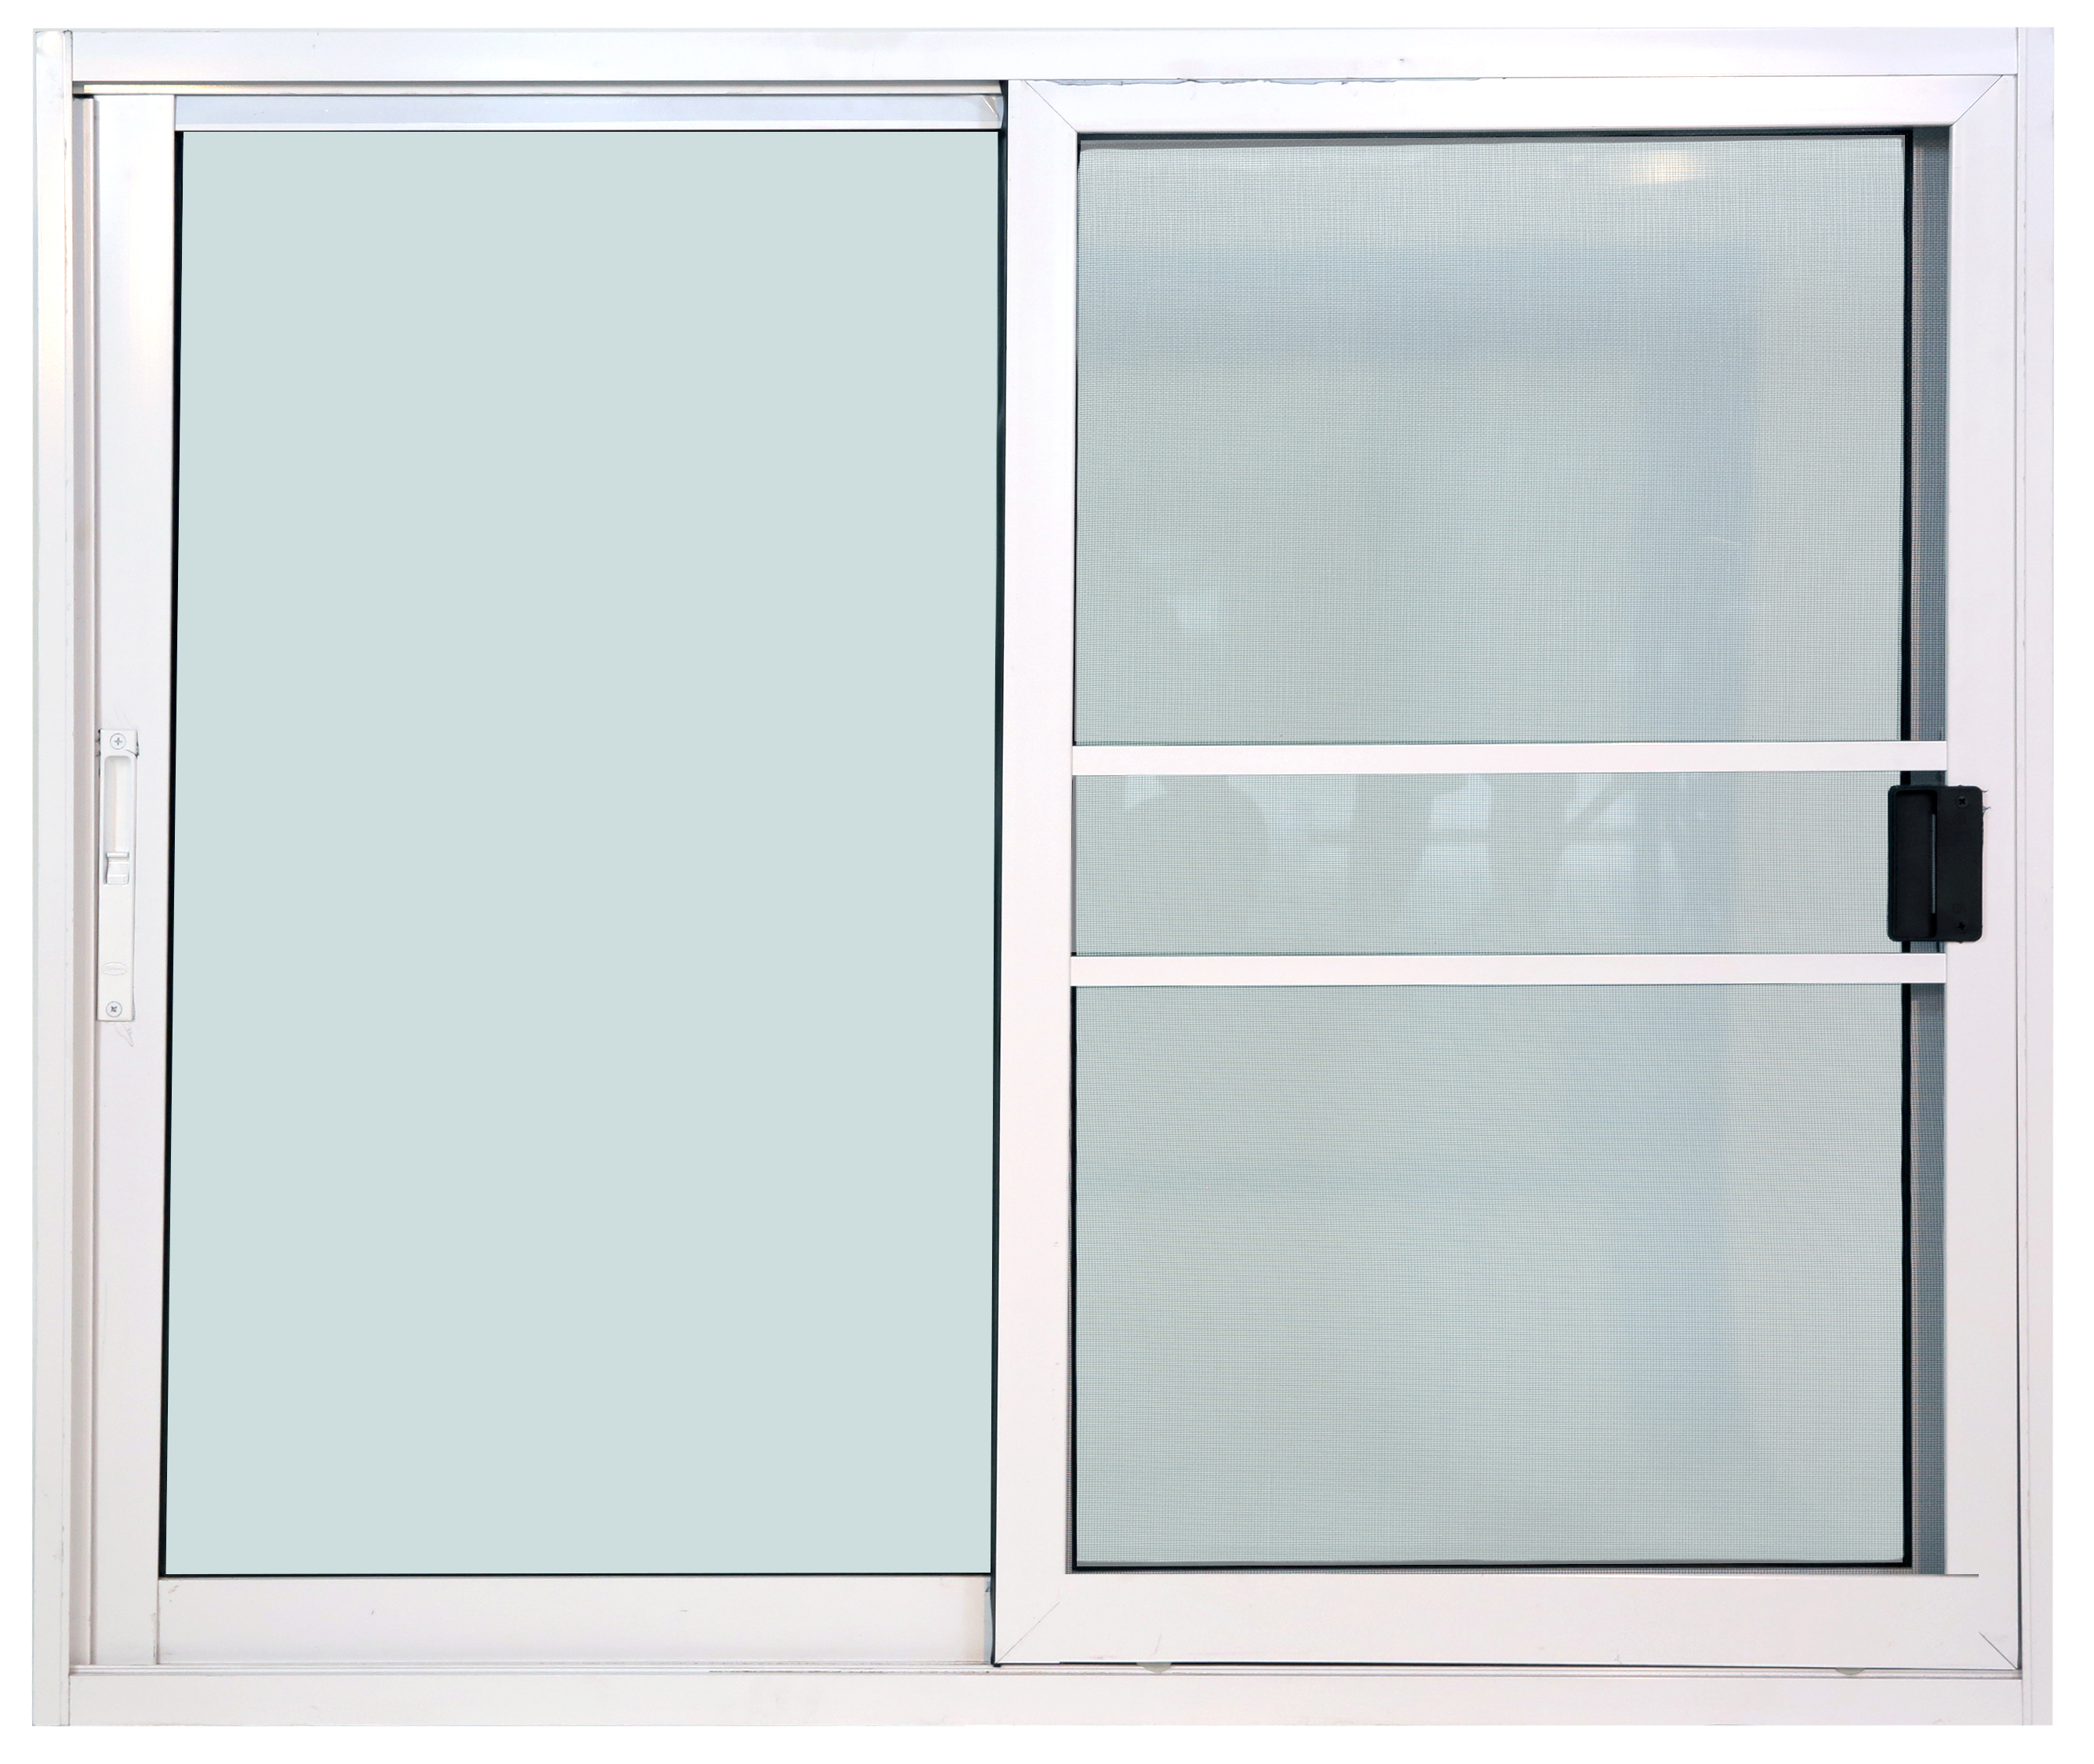 หน้าต่างบานเลื่อน 2ช่อง อลูมิเนียมสีอบขาว+กระจกใสเขียว+มุ้ง 122ซม.*105ซม.